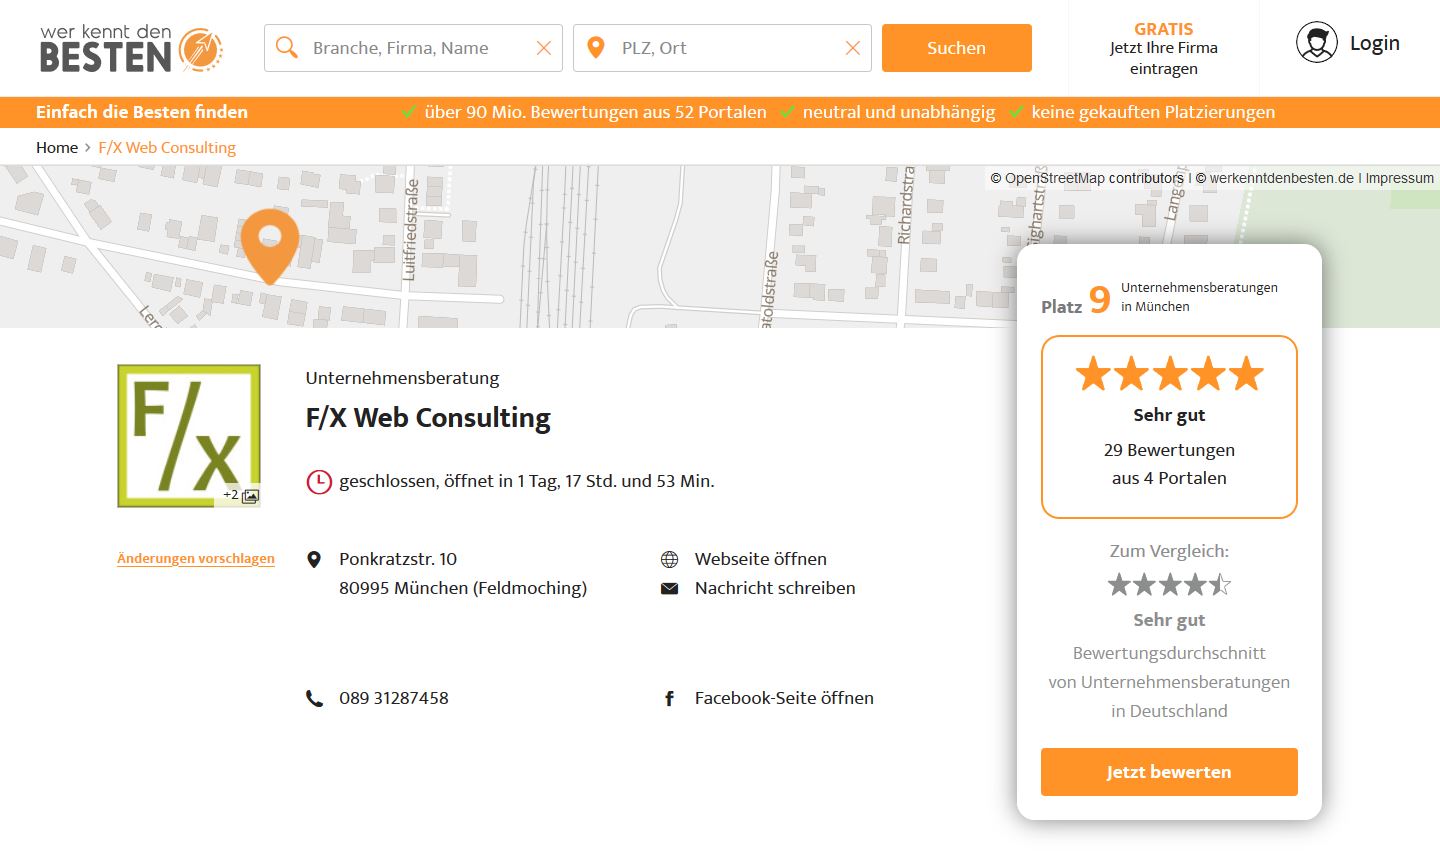 Internetagentur F/X Web Consulting auf Platz 9 der Unternehmensberatungen in München - 29 Bewertungen und Empfehlungen – werkenntdenBESTEN.de